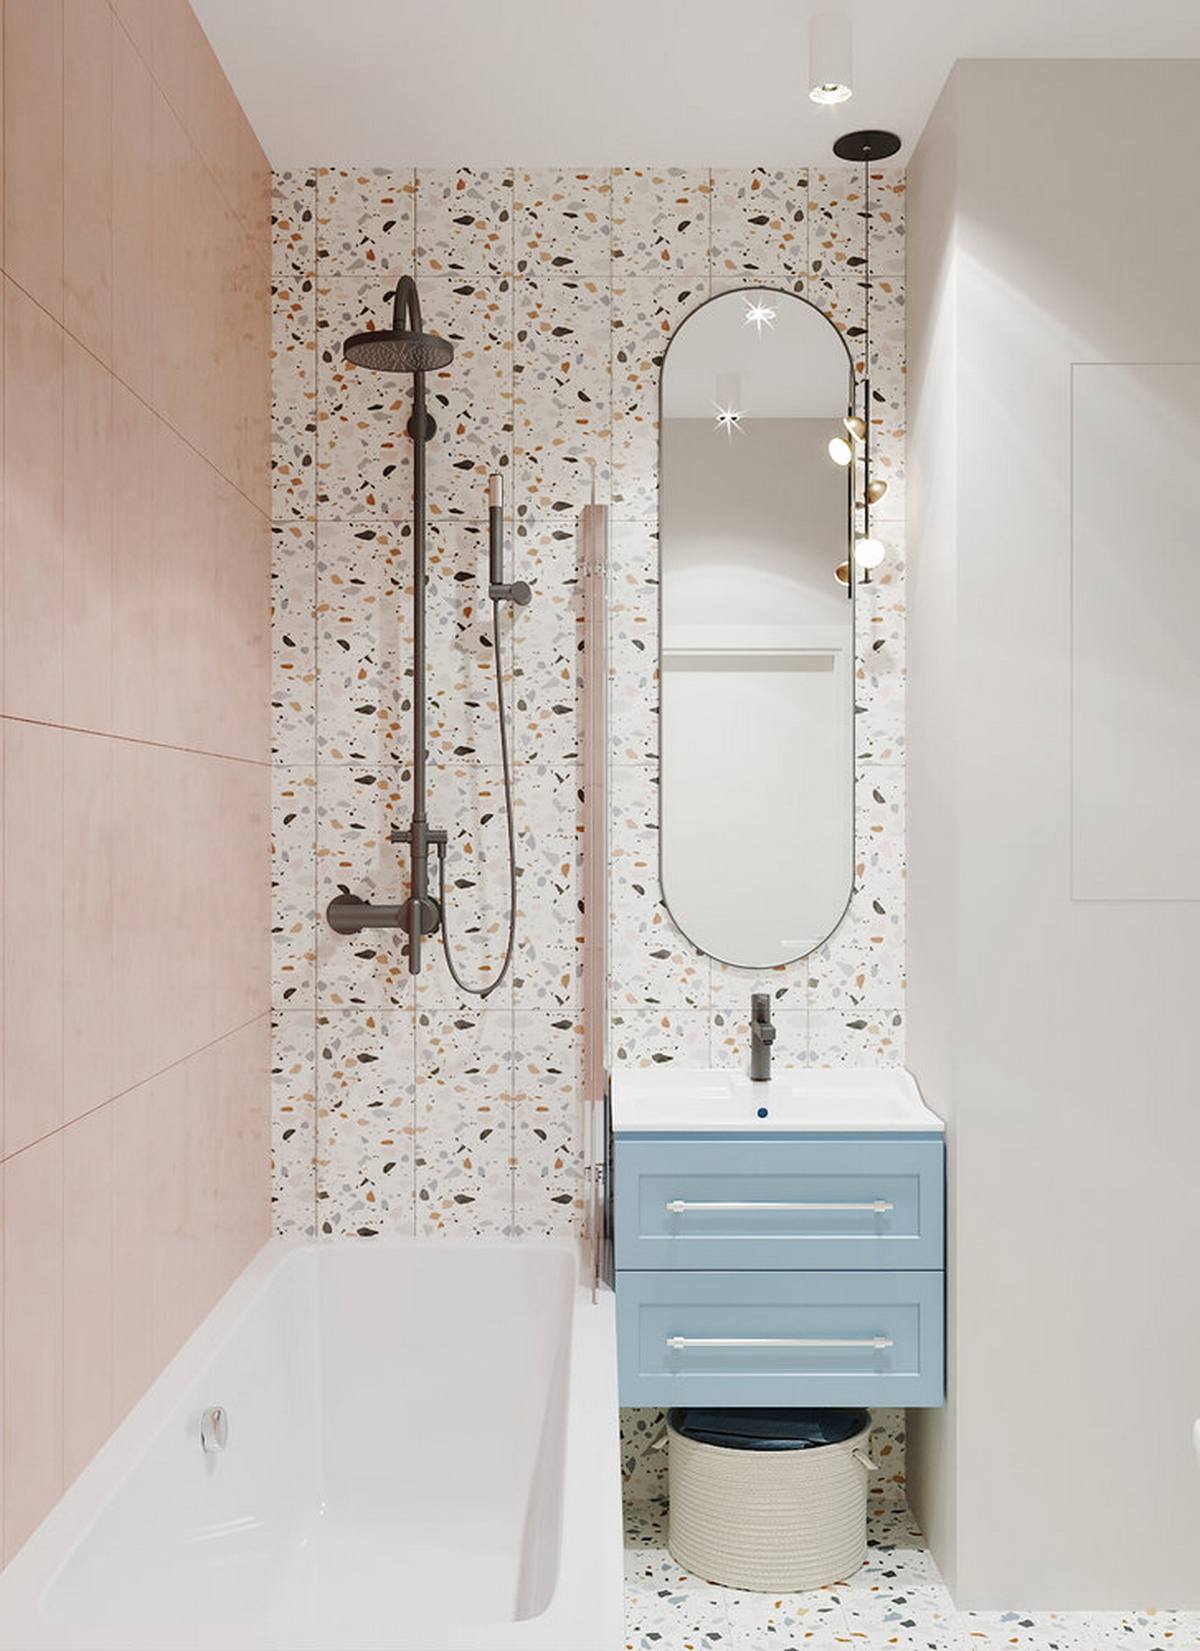 Cùng với phòng ngủ thì phòng tắm là nơi được chủ nhân yêu thích hơn cả vì nó được thiết kế cực kỳ dễ thương với gam màu hồng phấn và xanh lam pastel dịu nhẹ. Tấm gương dọc với các đường bo tròn cũng tạo cảm giác trần nhà như cao hơn.